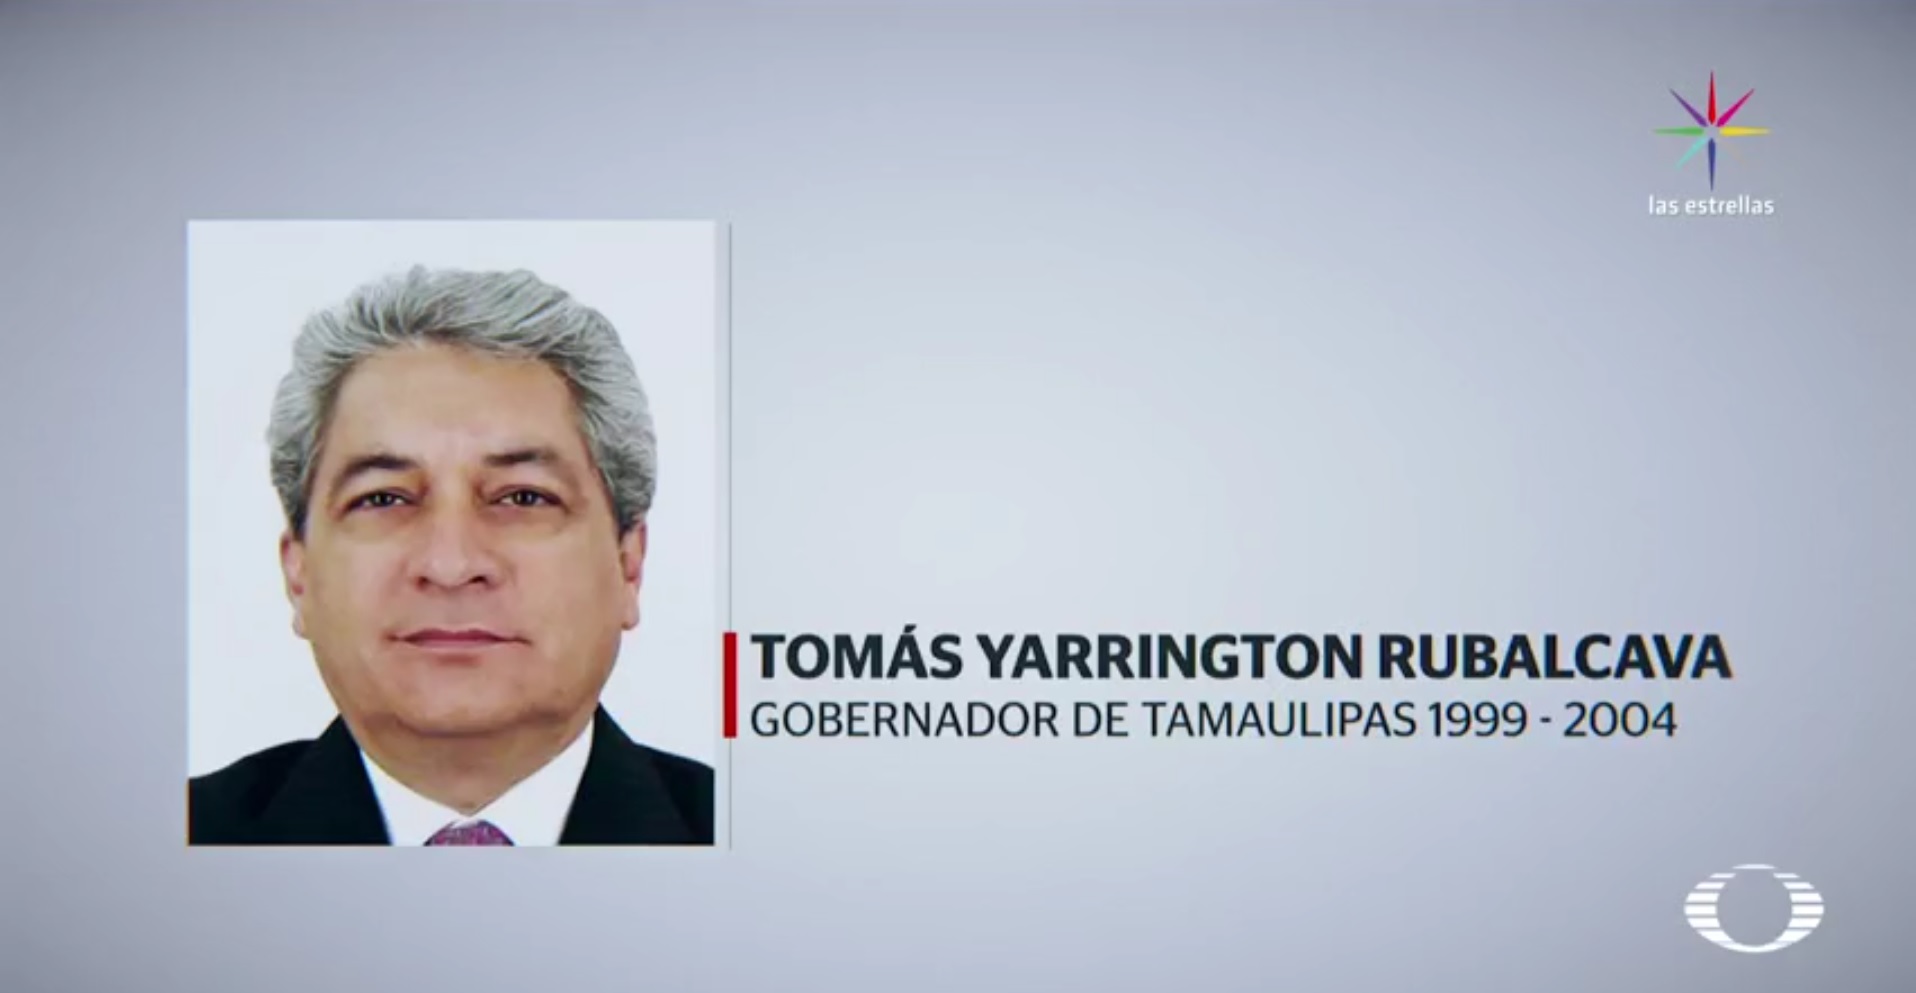 Tomás Yarrington Rubalcava fue gobernador de Tamaulipas de 1999 a 2004. (Noticieros Televisa)